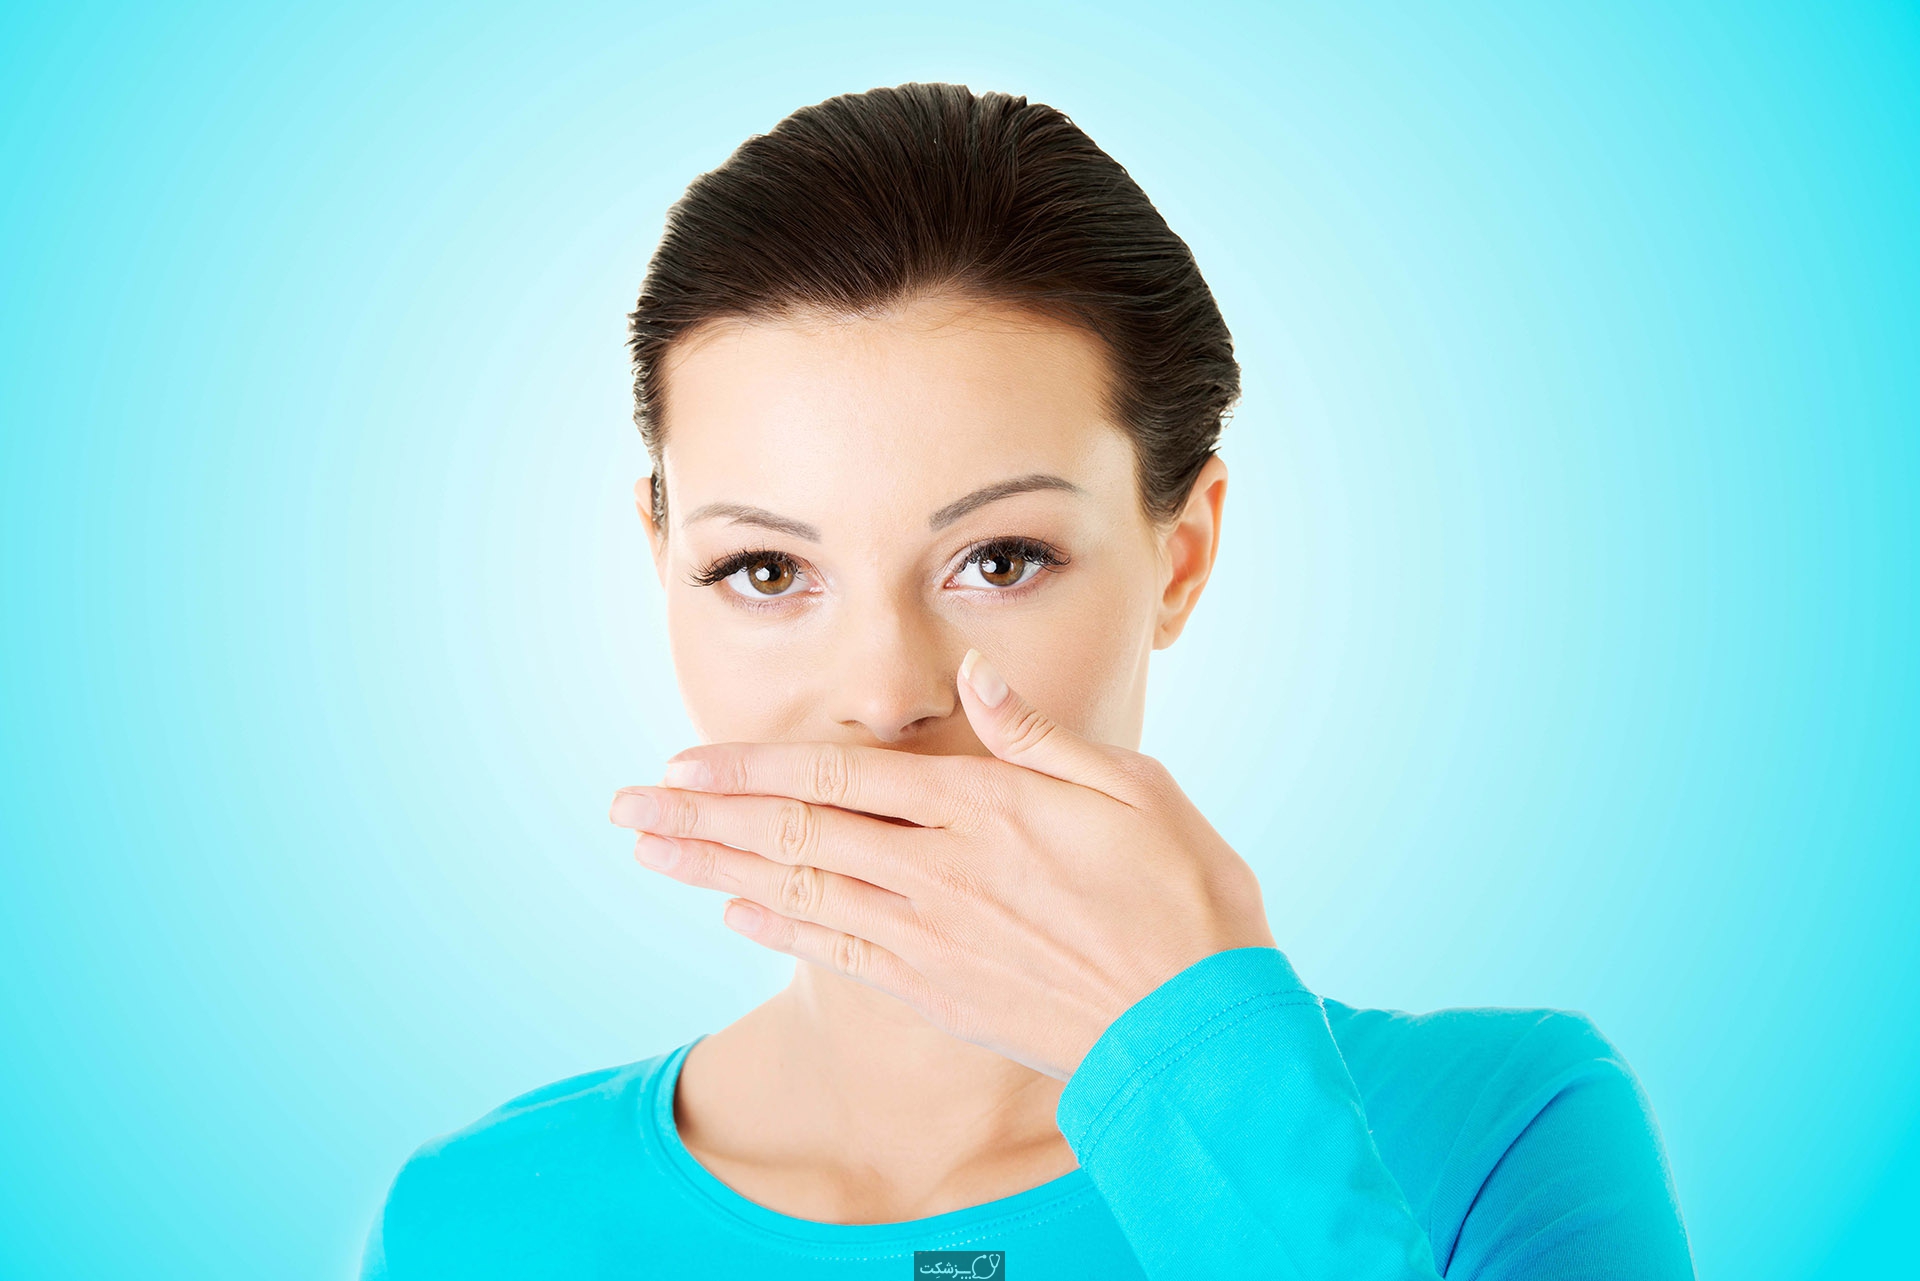 11 علت اصلی بوی بد دهان کدامند؟